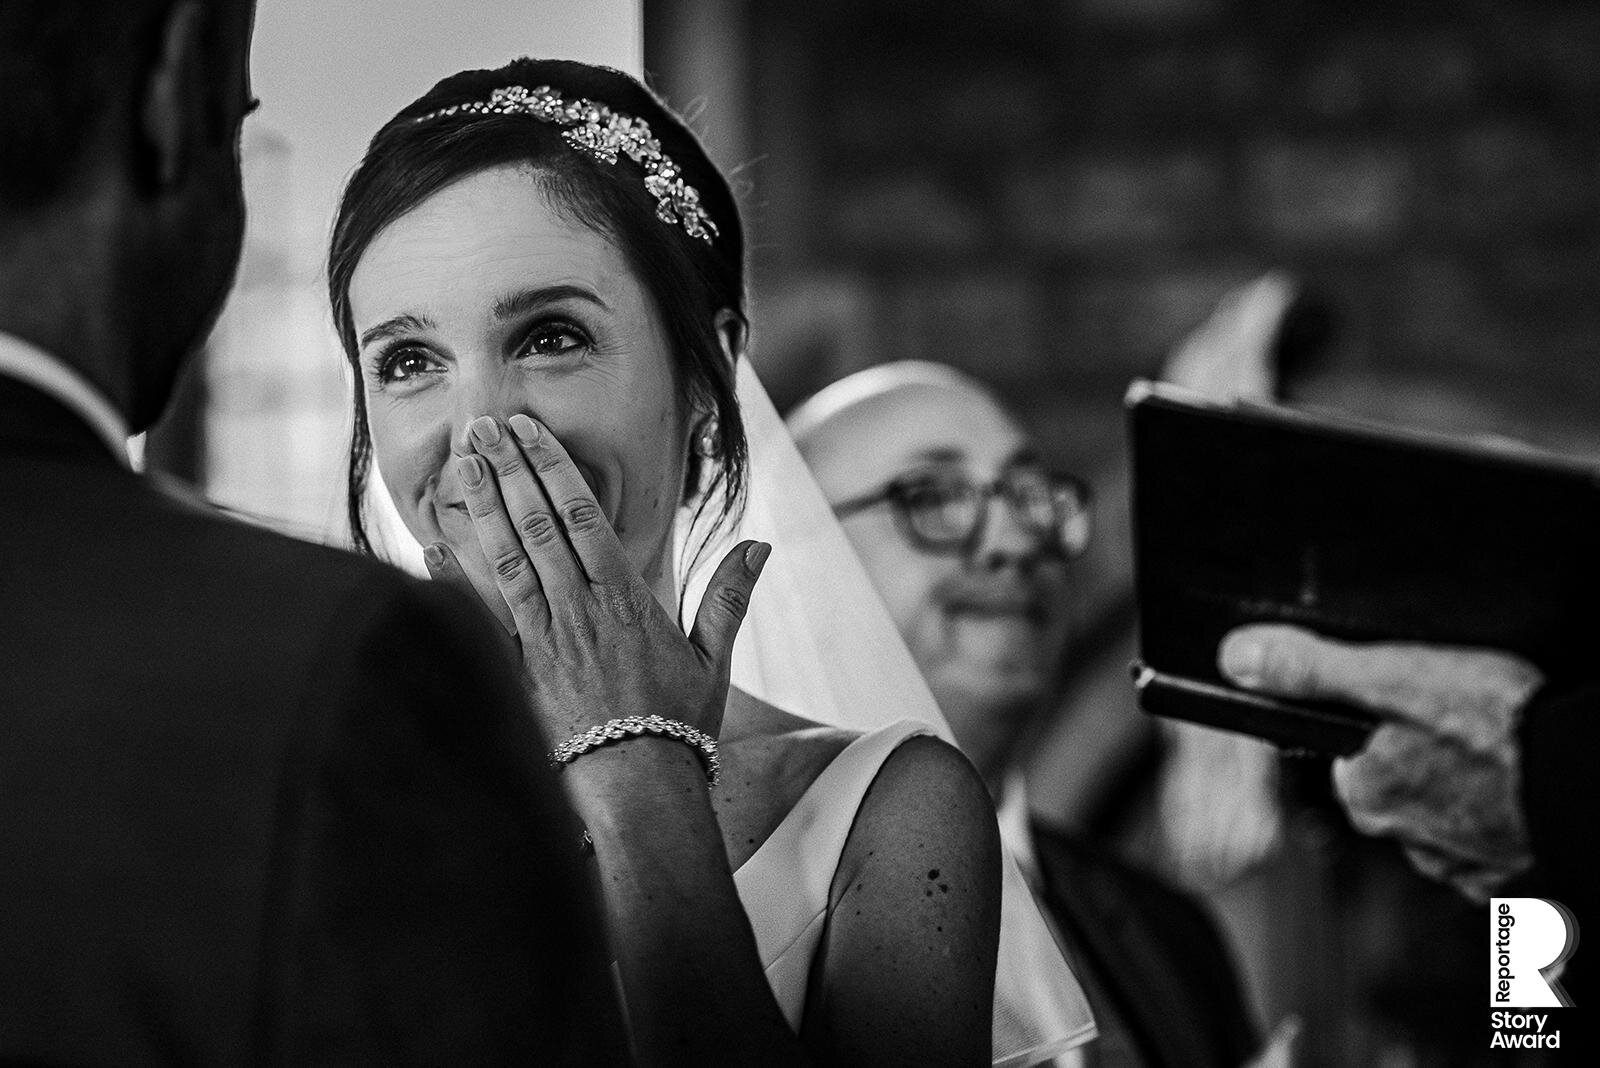  Emotional bride in church. 